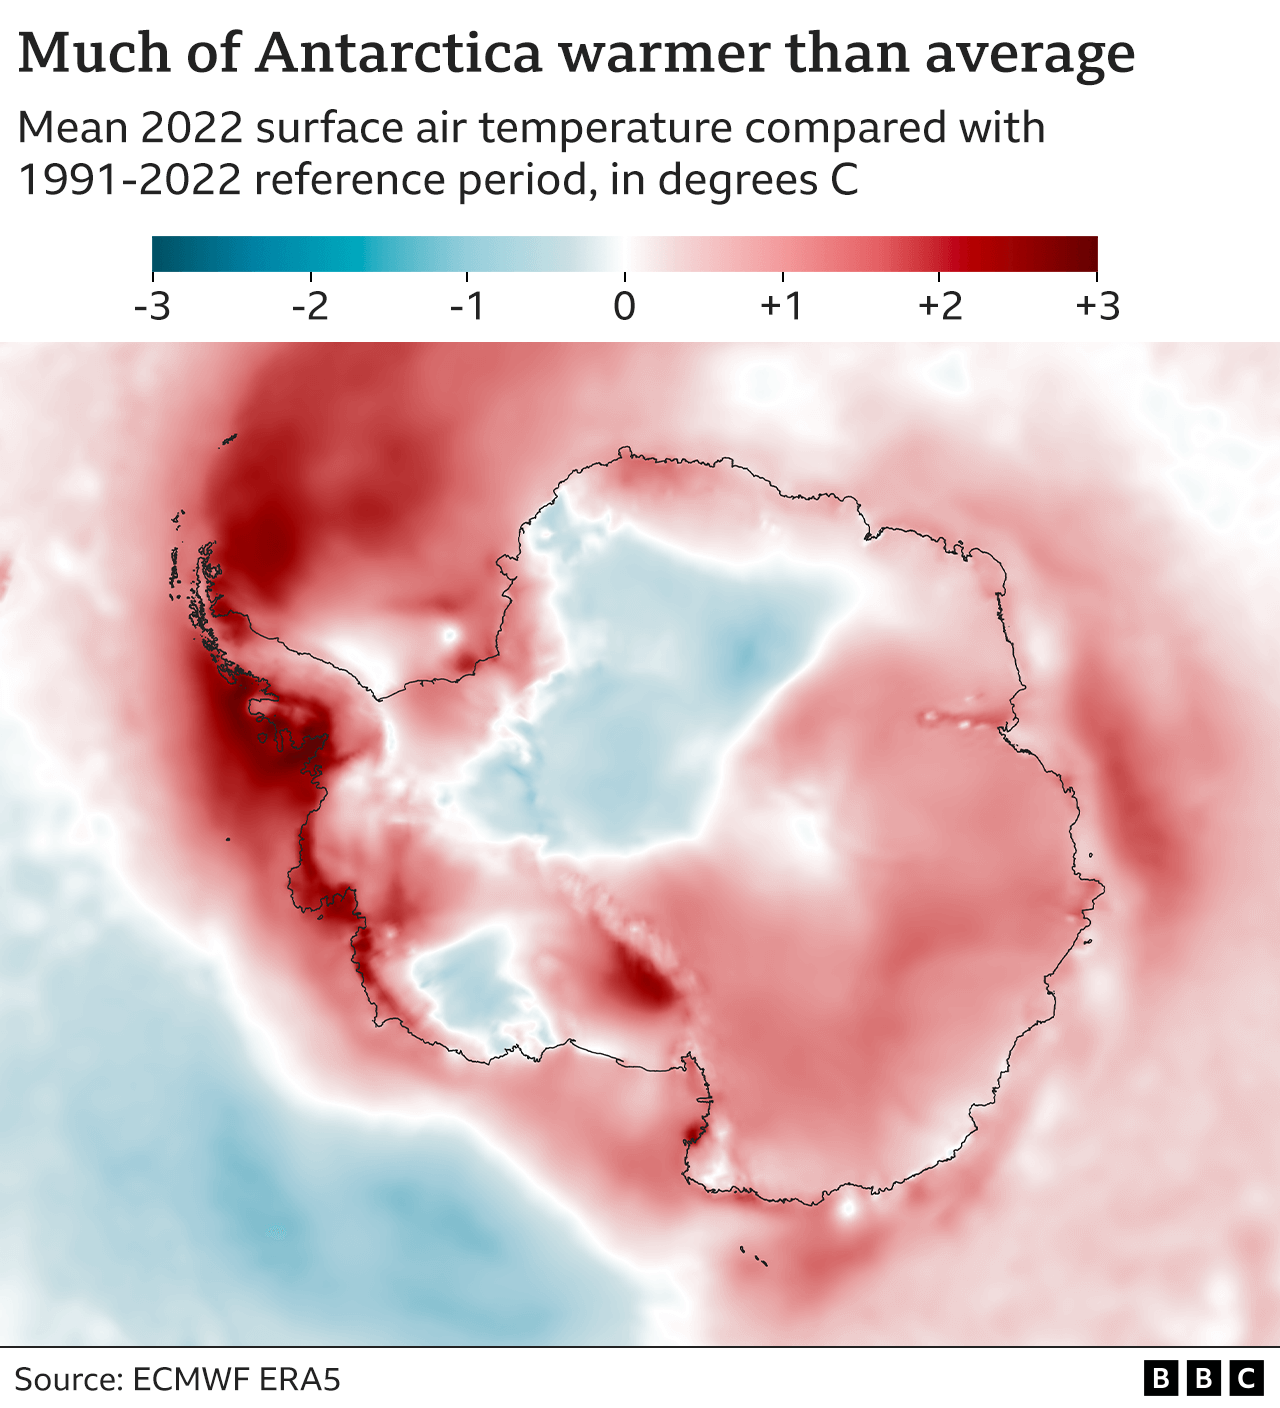 Mappa dell'Antartide con ombreggiatura di colore per rappresentare la differenza tra la temperatura media dell'aria superficiale nel 2022 e la temperatura media durante il periodo di riferimento 1991-2020. A parte due zone blu più fredde, il continente è per lo più rosso, circa 1 grado sopra la media. Le aree sopra la penisola sono di colore rosso scuro, fino a 3 gradi sopra la media.